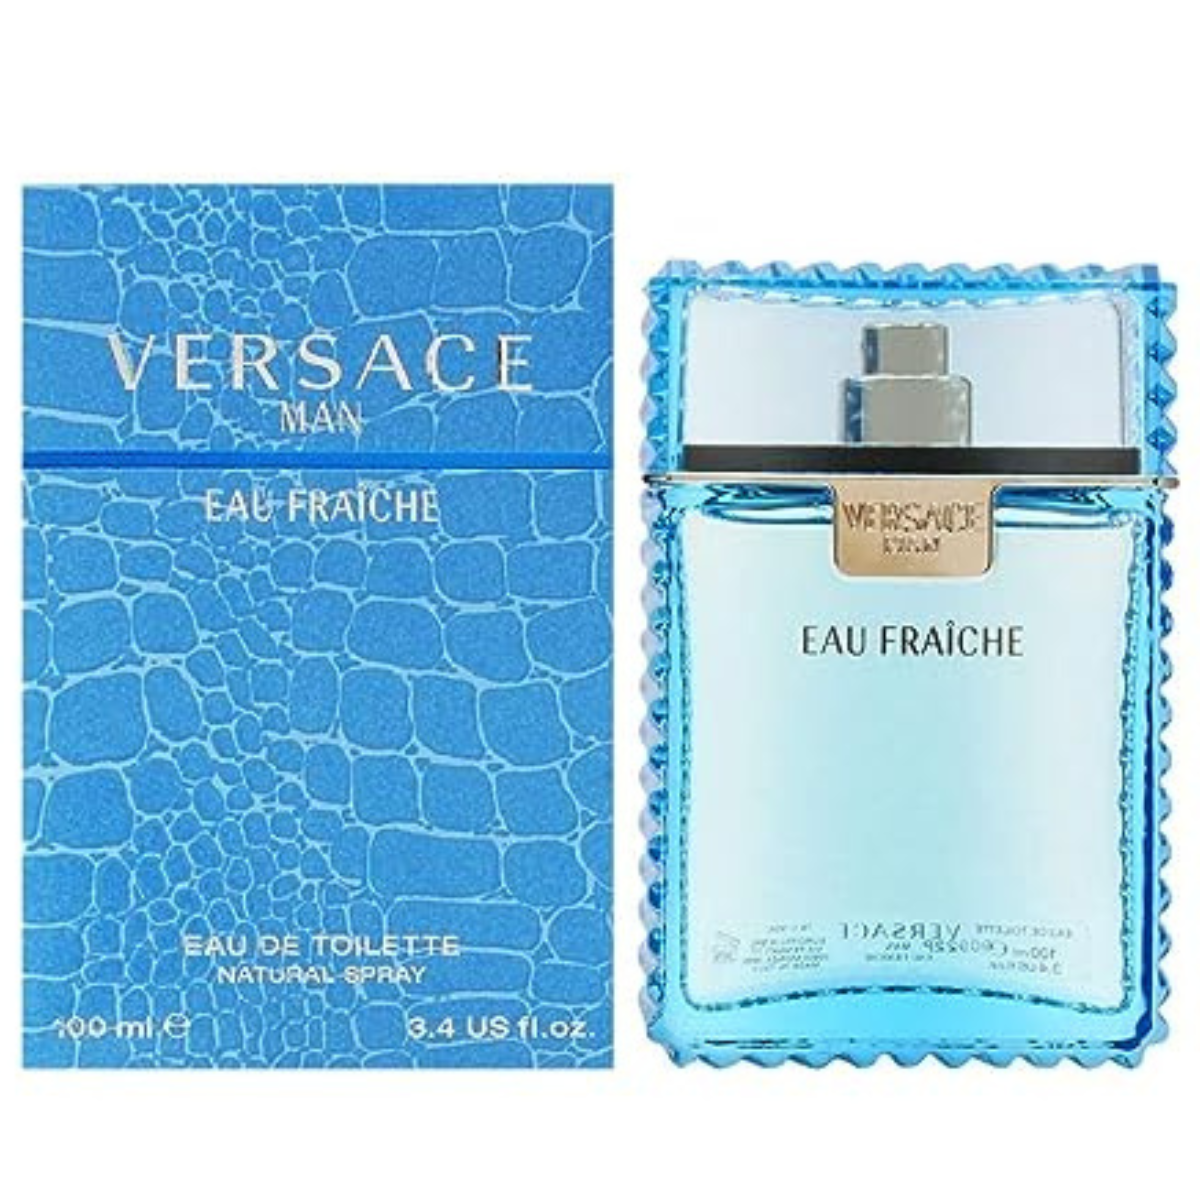 Versace Man Eau Fraiche 100 ml for Men-1